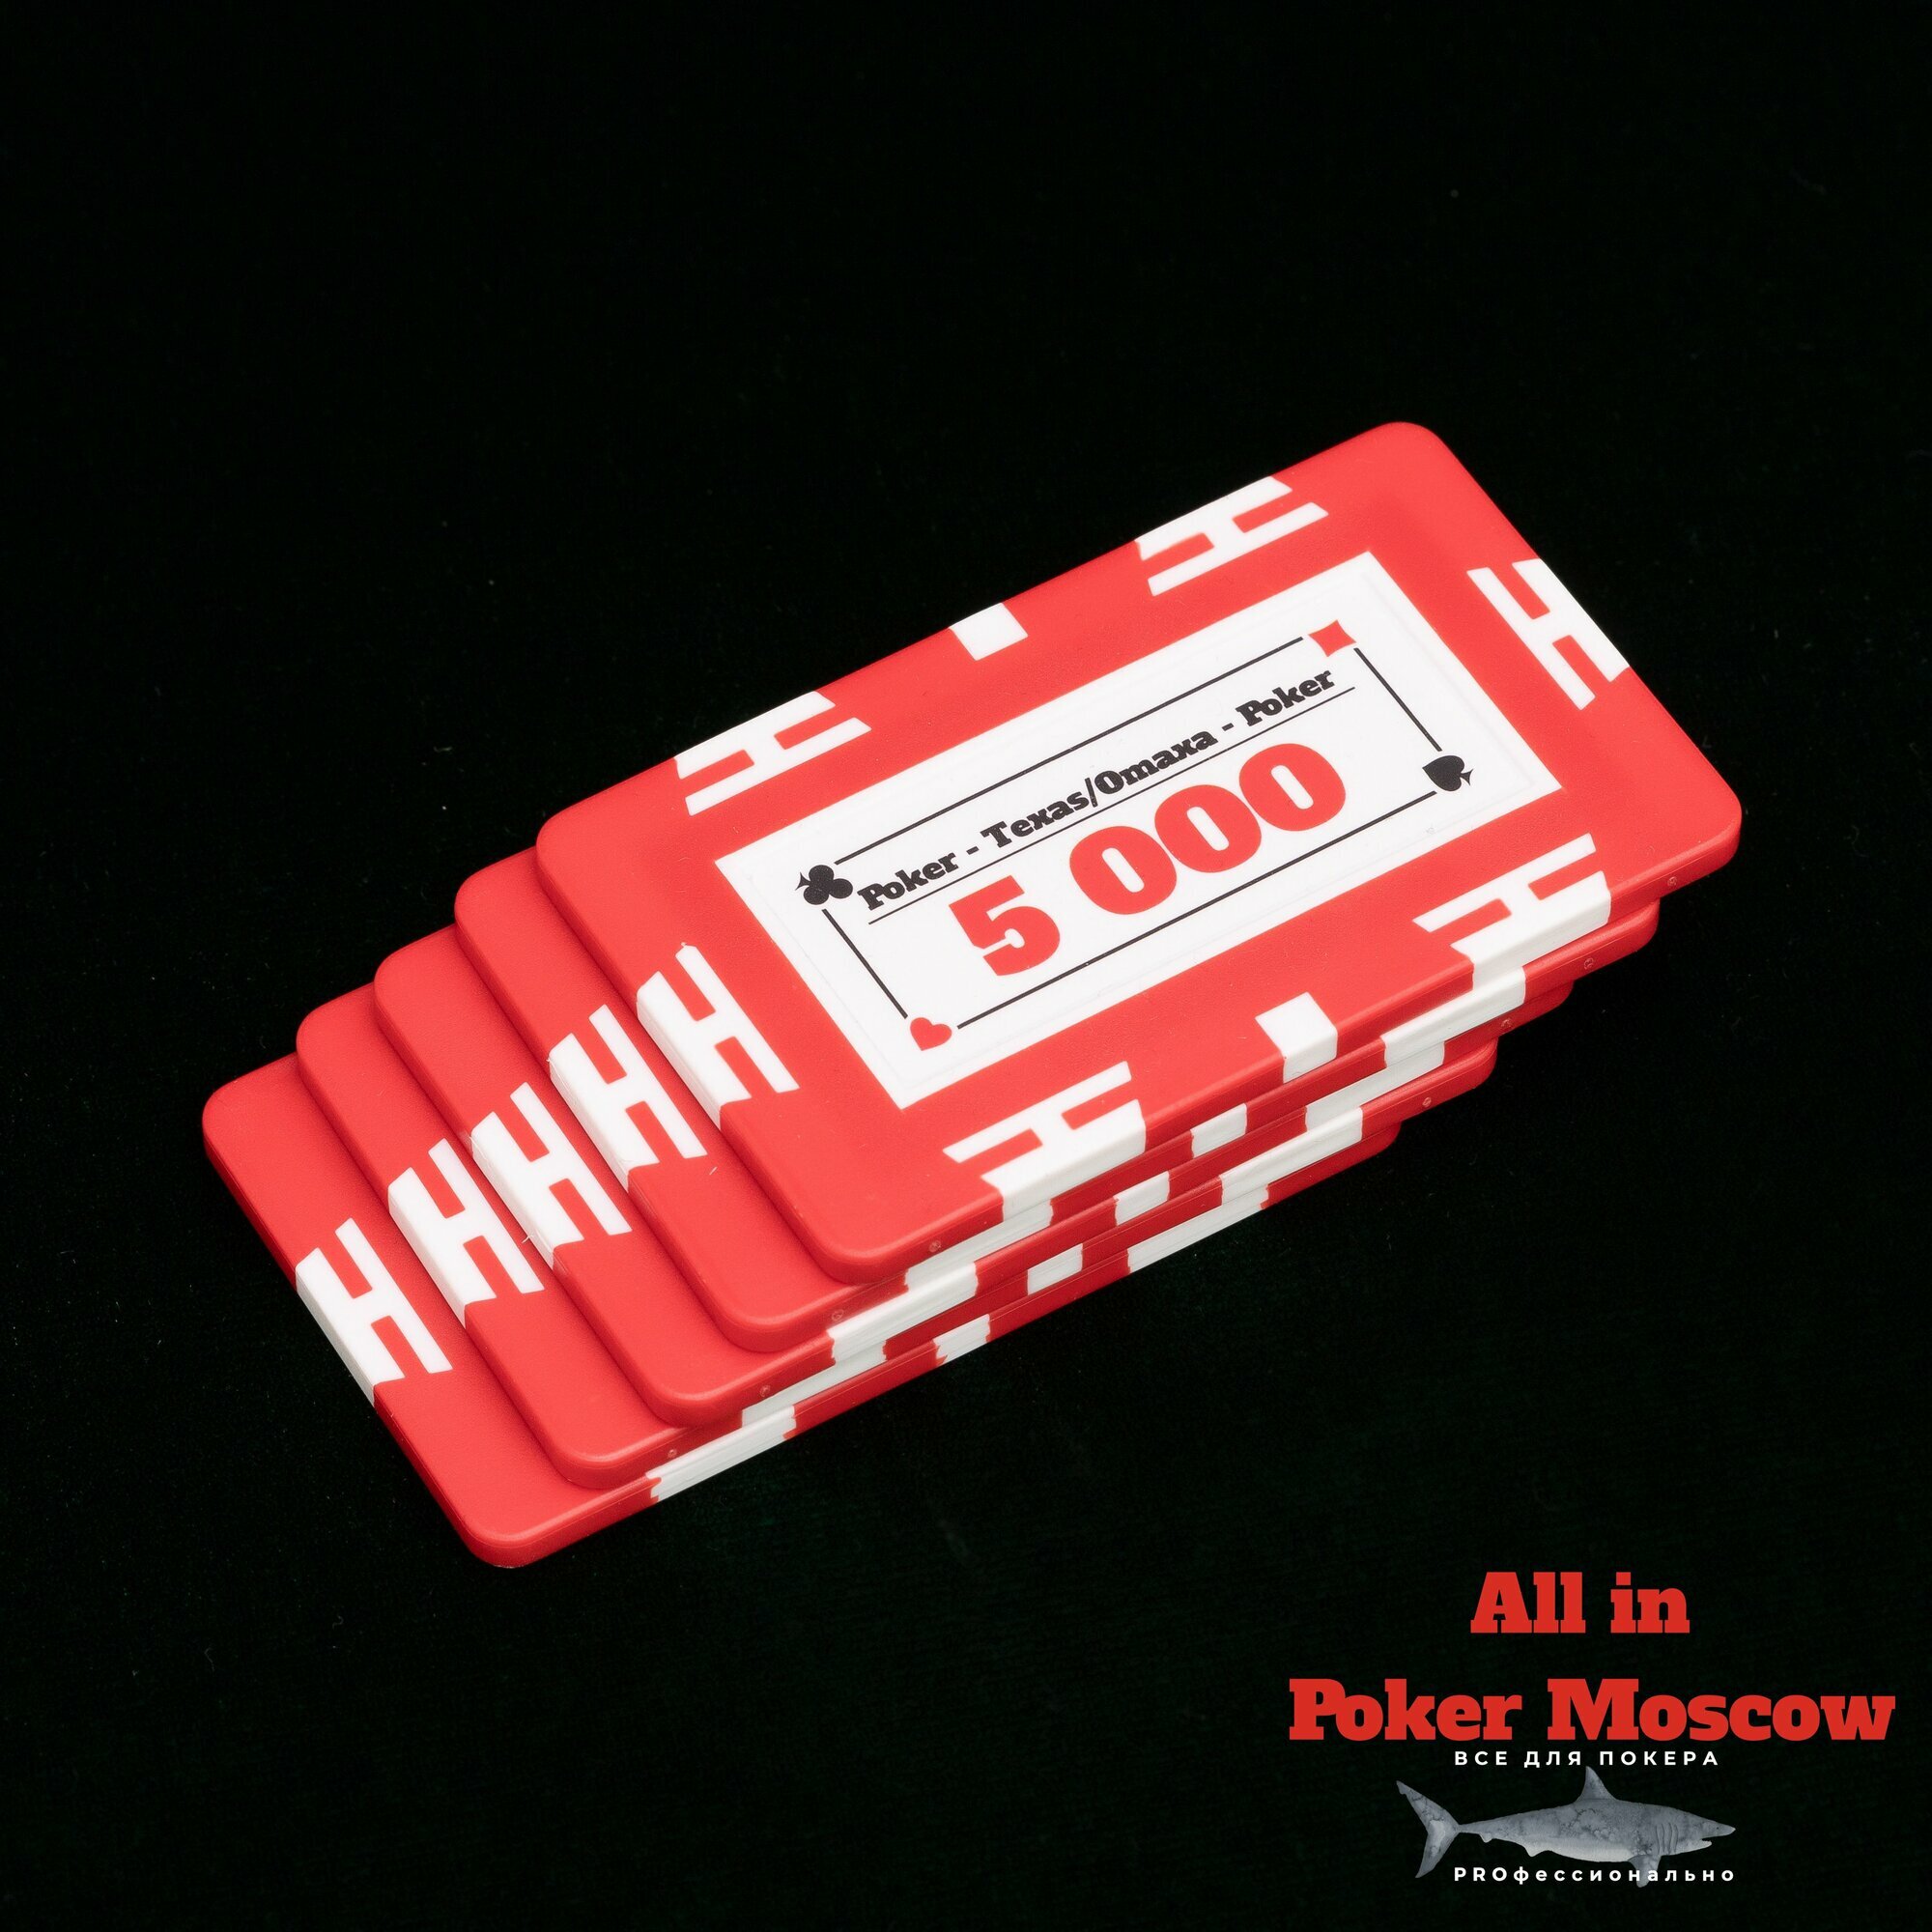 Фишки прямоугольные для покера( Плаки) номинал 5 000 - 5 штук